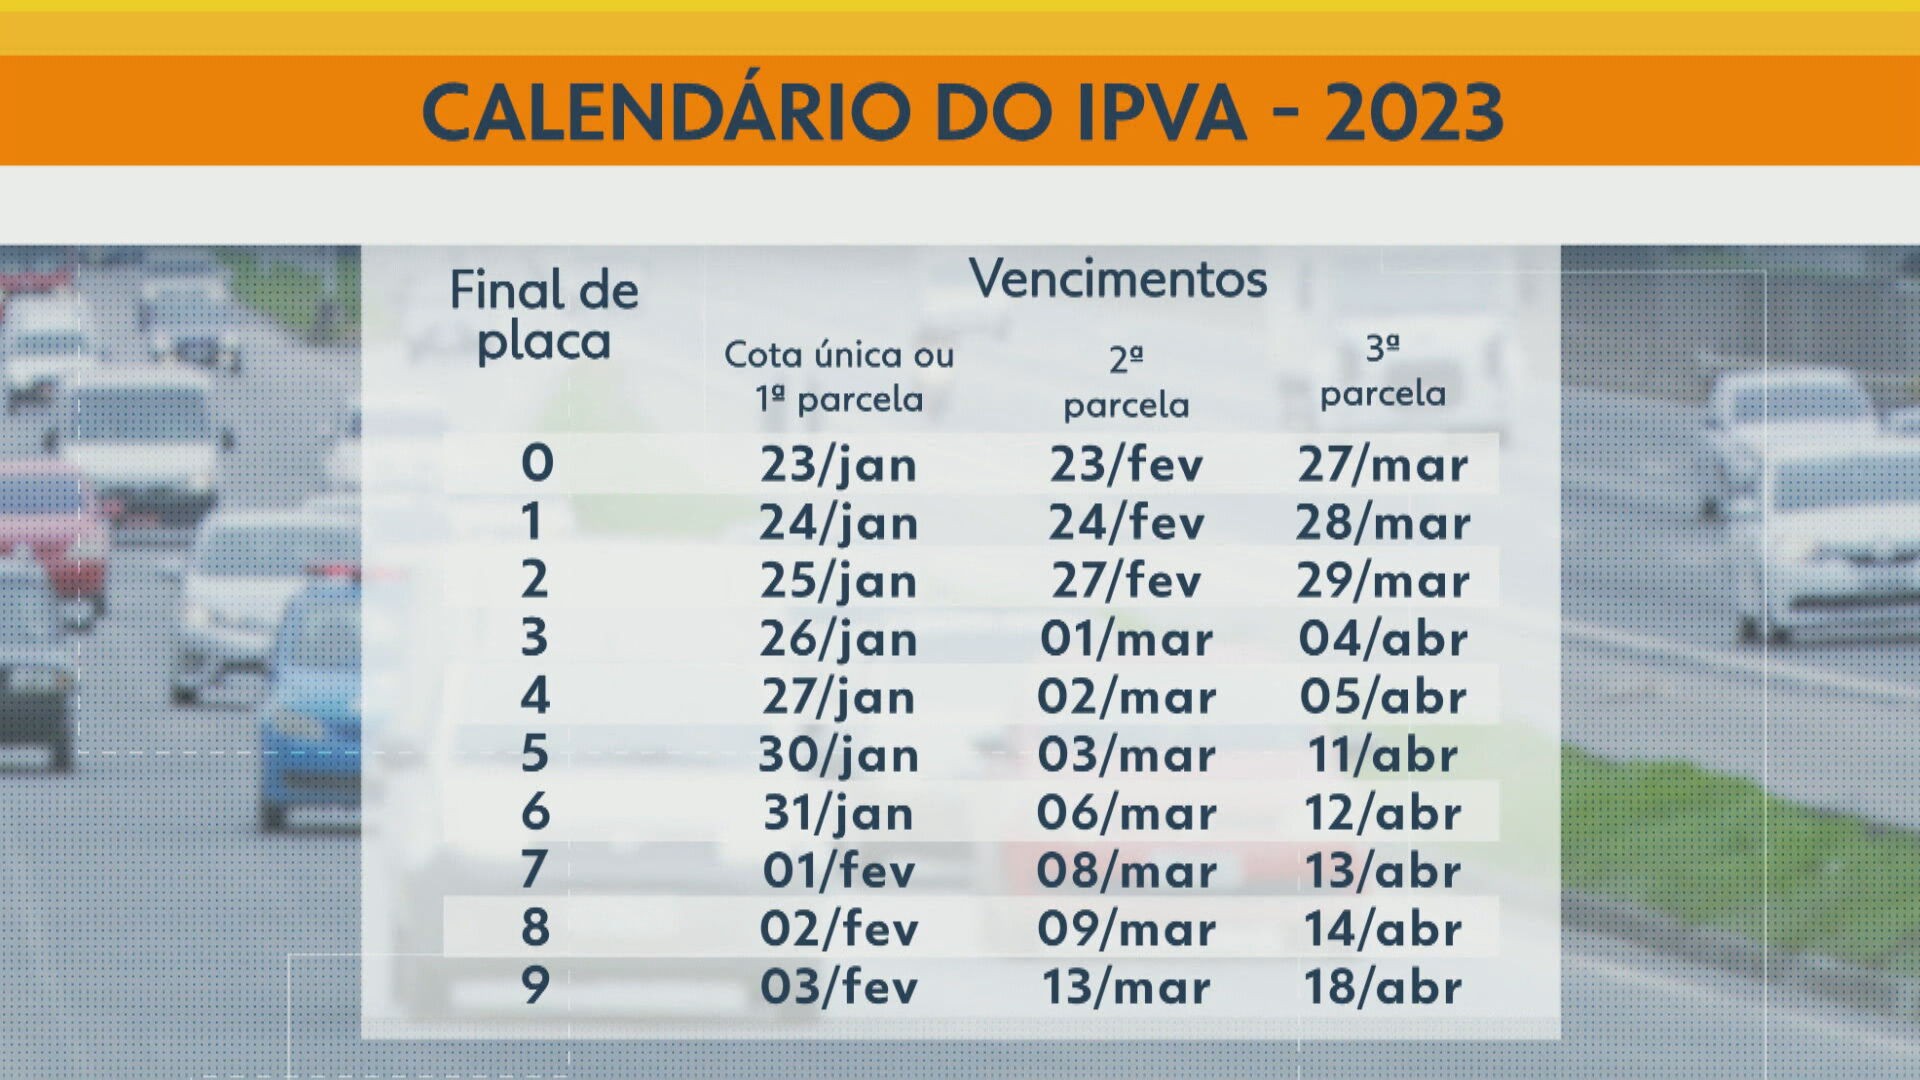 IPVA 2023 no RJ donos de carros com final de placa 3 têm último dia